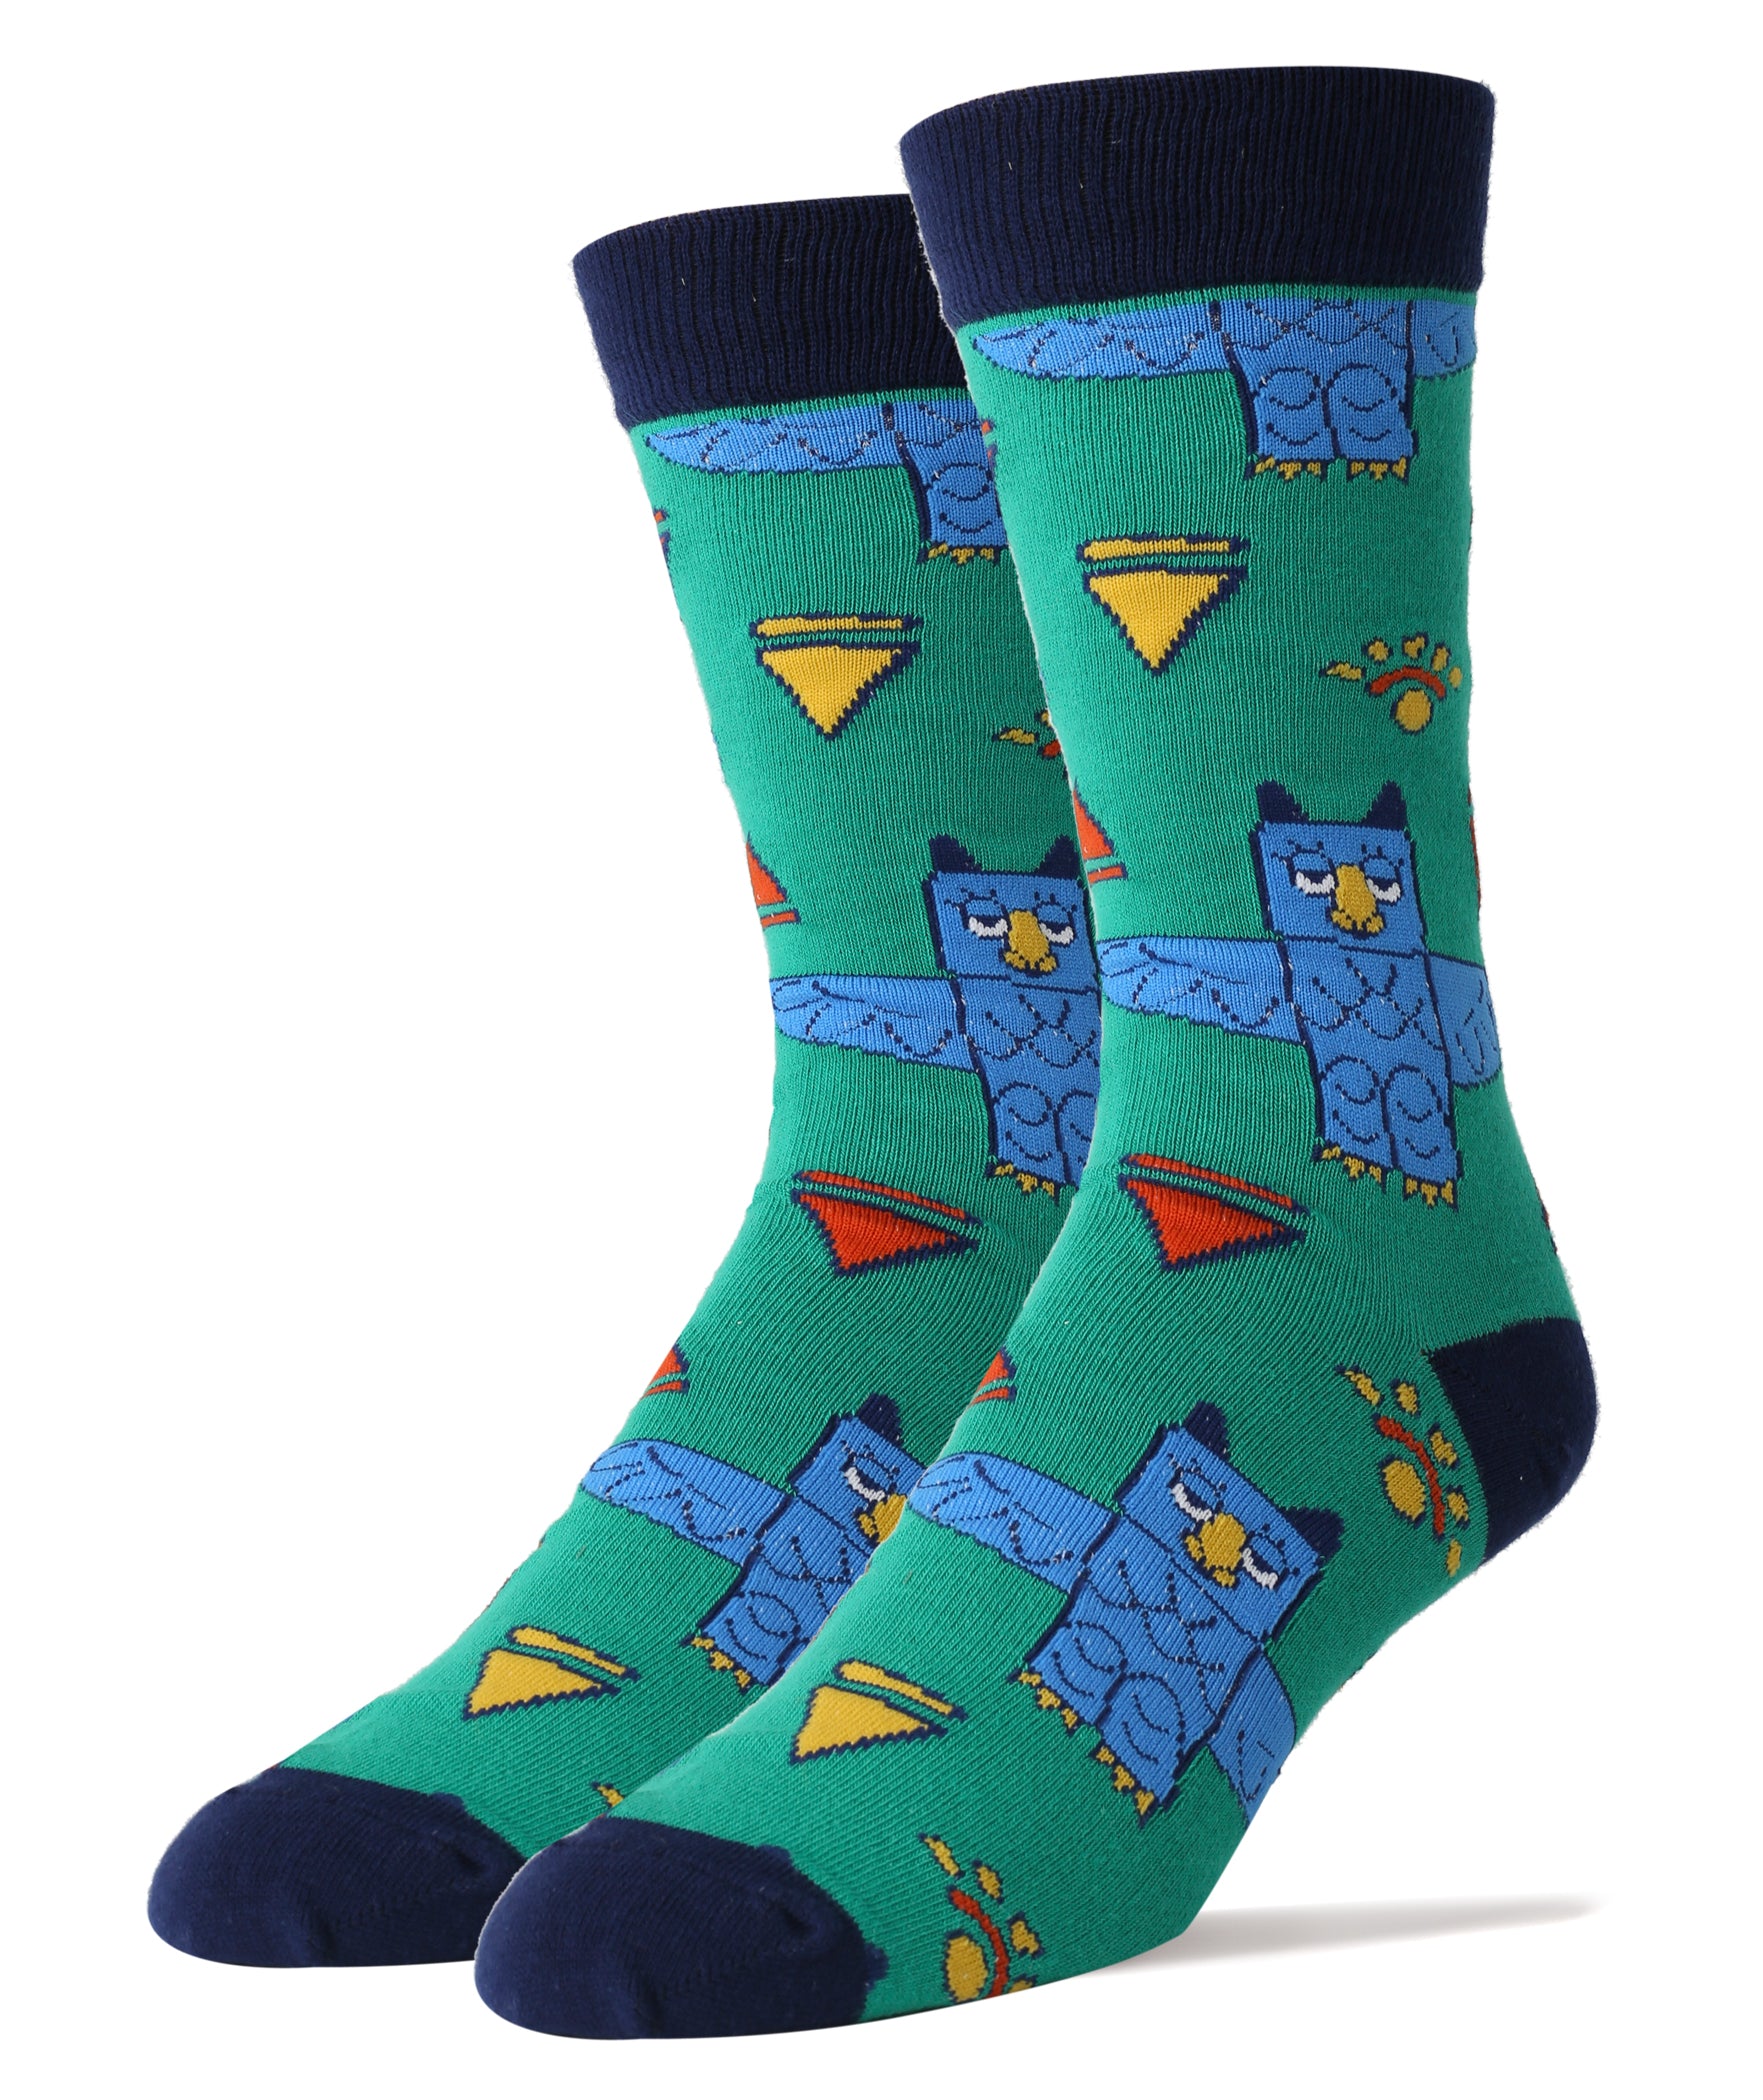 Totem Owl Socks | Novelty Crew Socks For Men